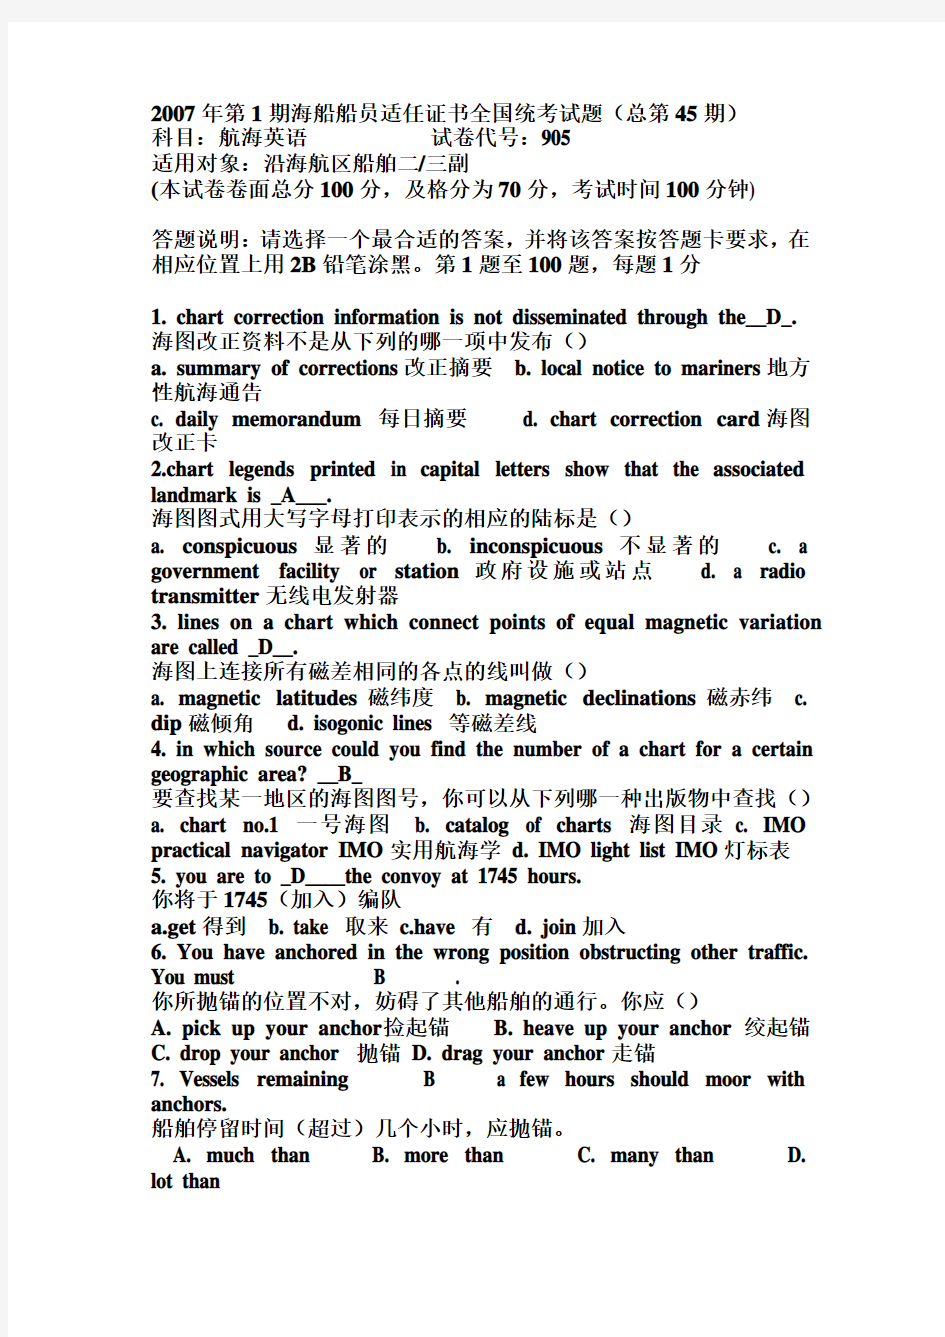 丙类三副航海英语905(45-48期及机考卷6卷)整理翻译